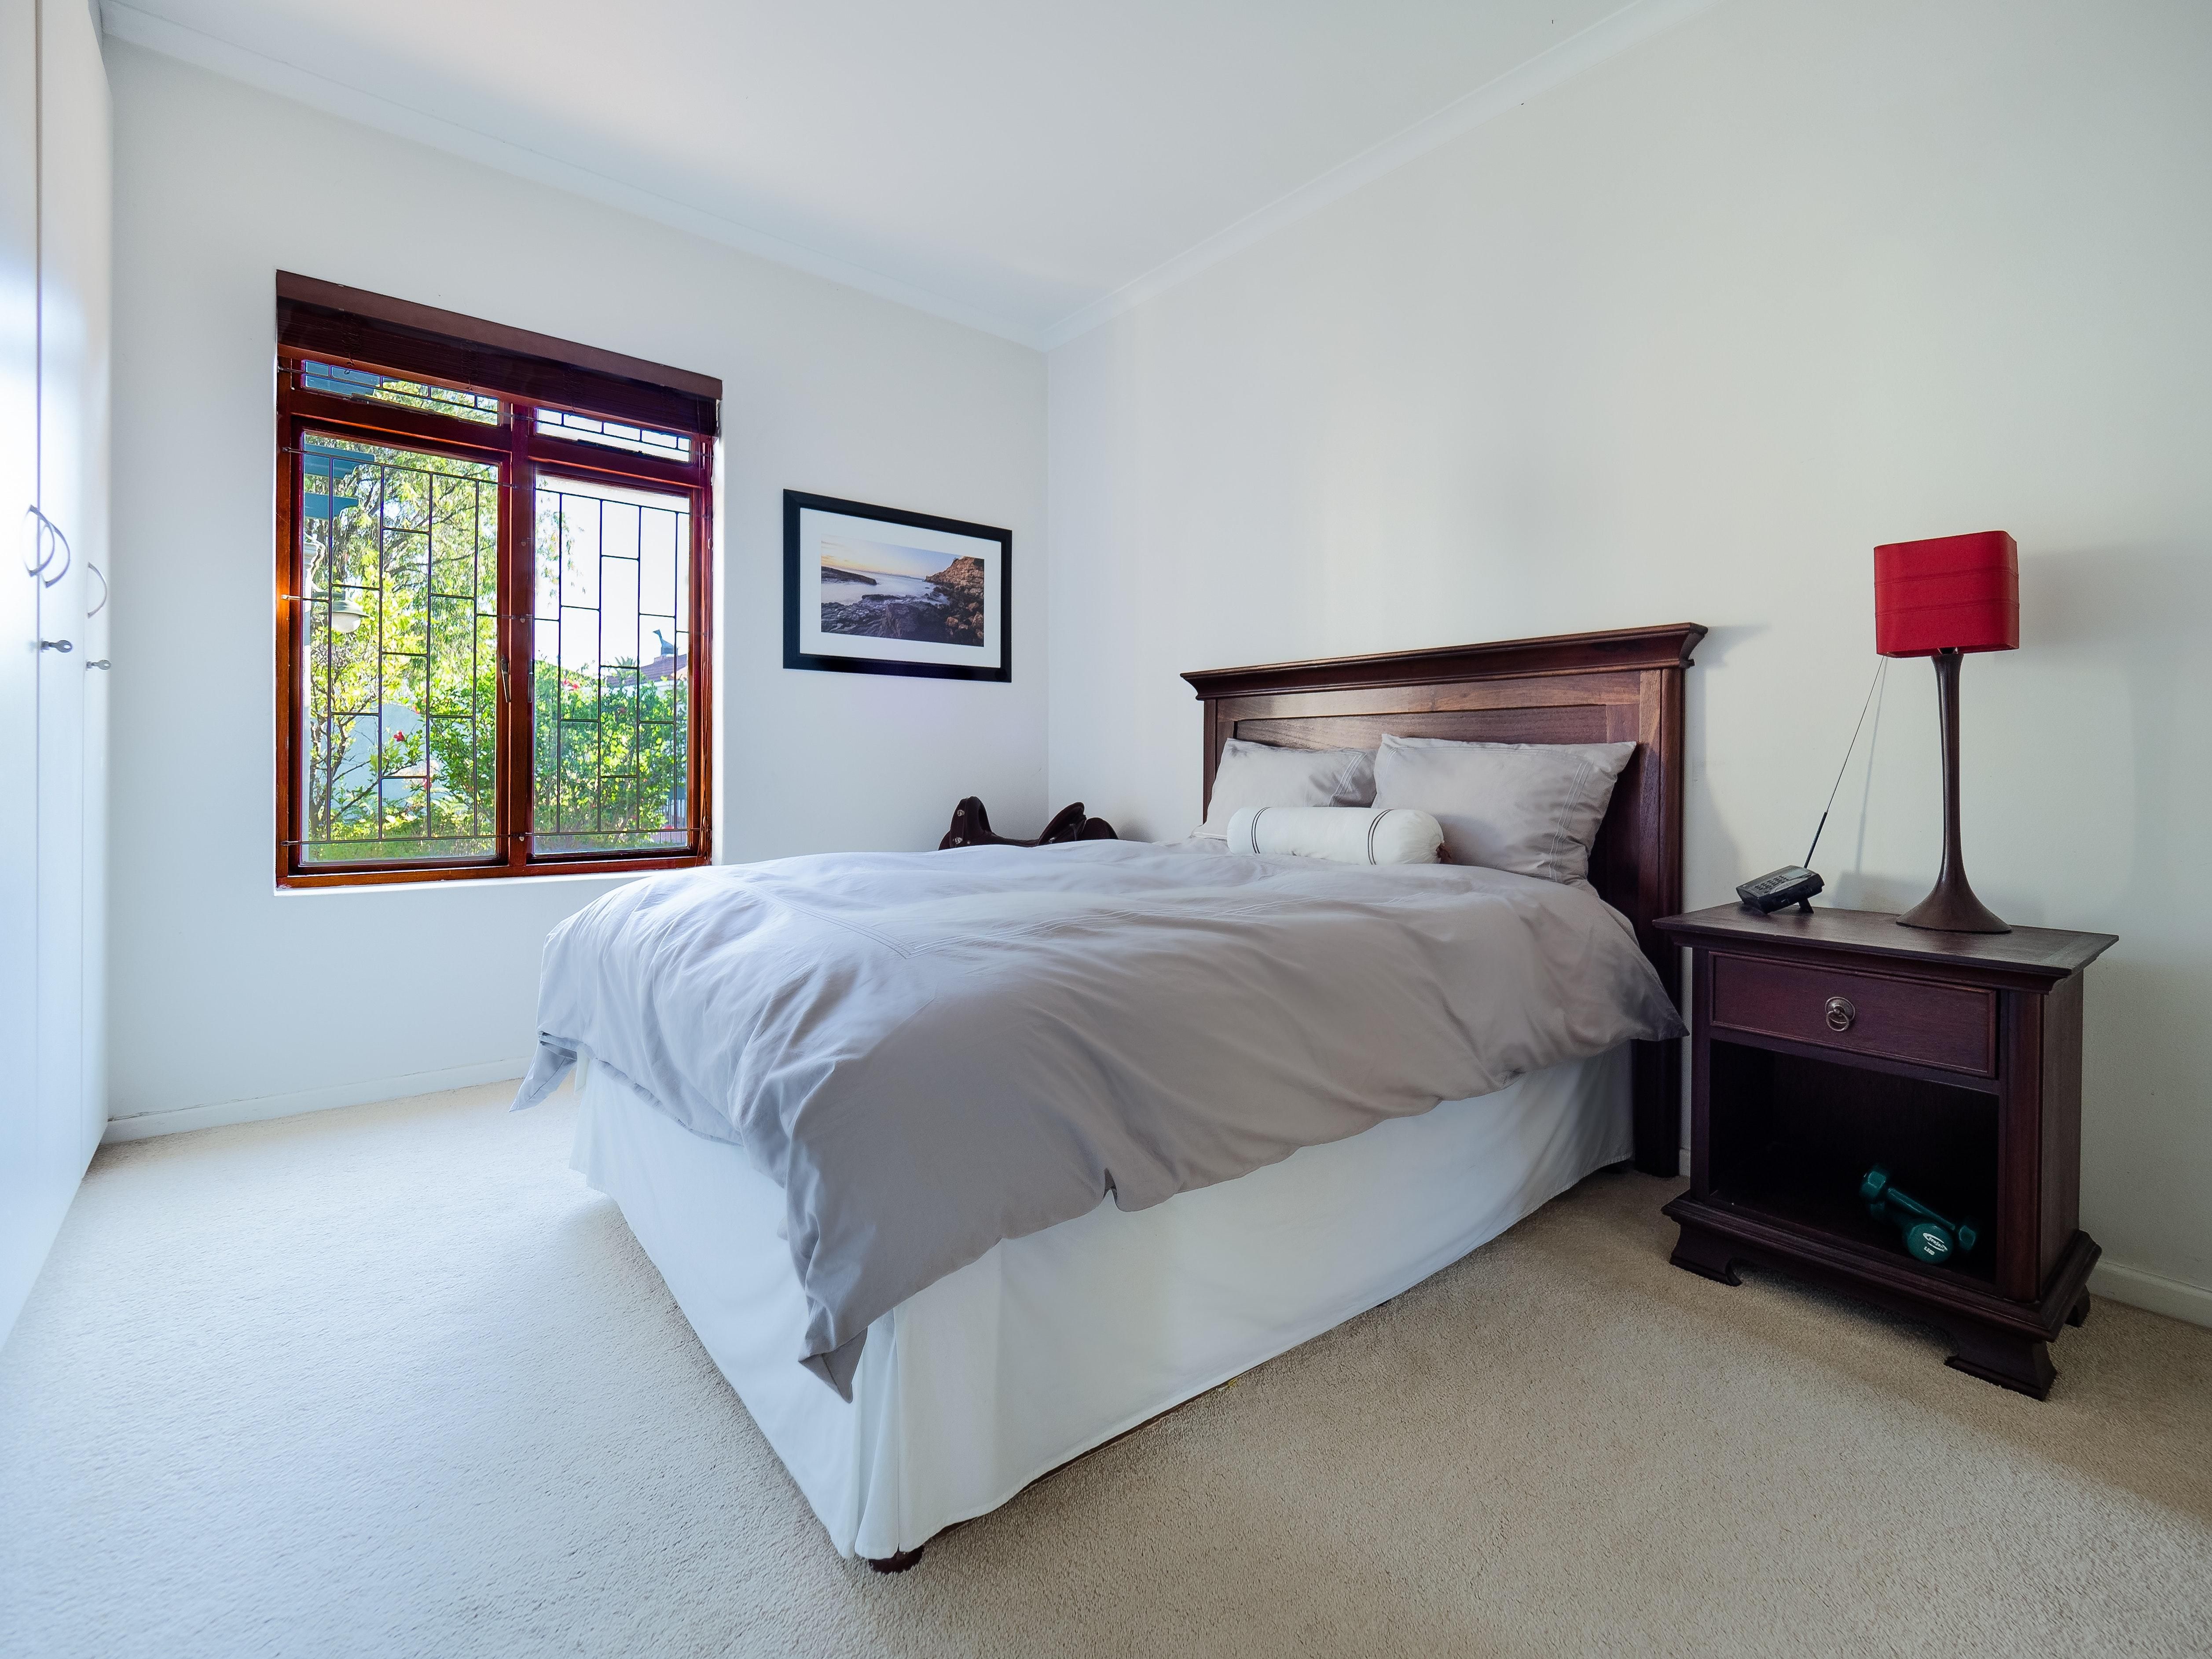 Идеально подойдет для вашей кровати: как выбрать качественное и комфортное одеяло - Дизайн 24